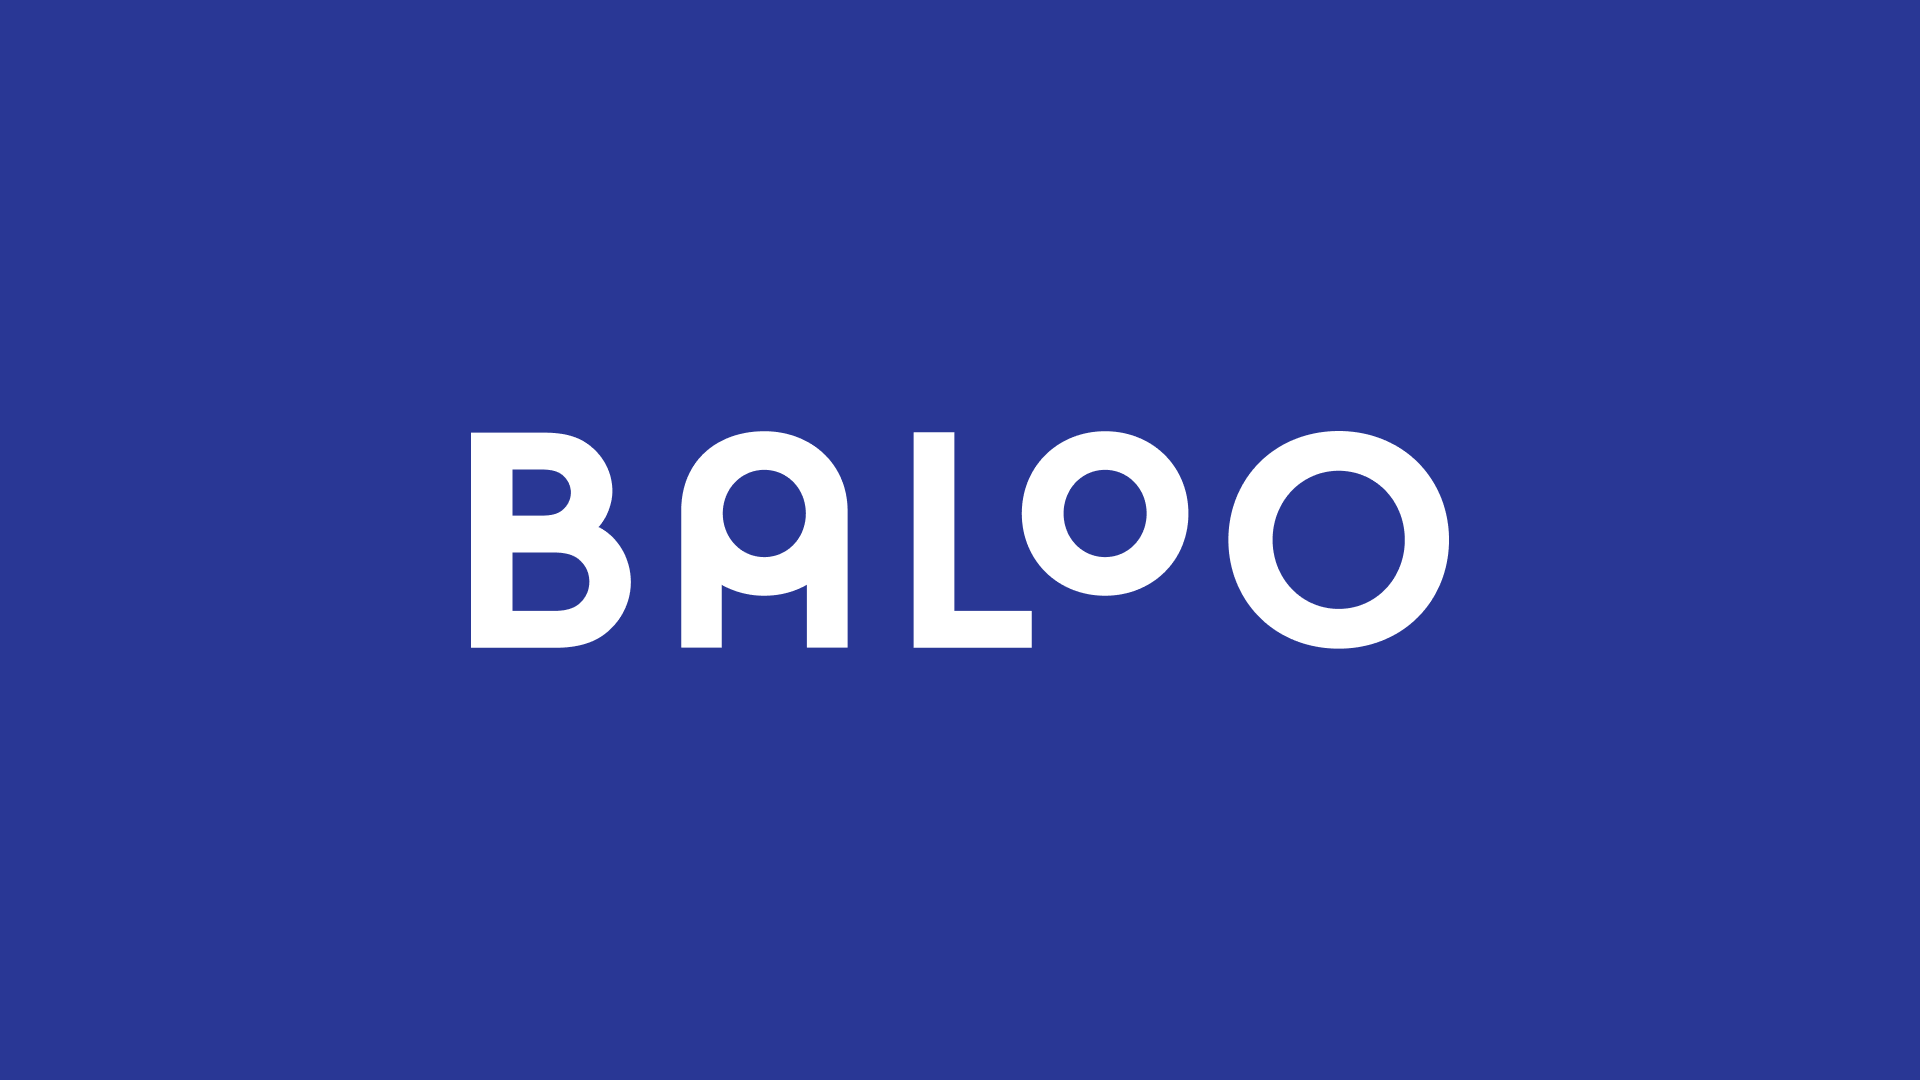 Baloo — Kimi Lewis